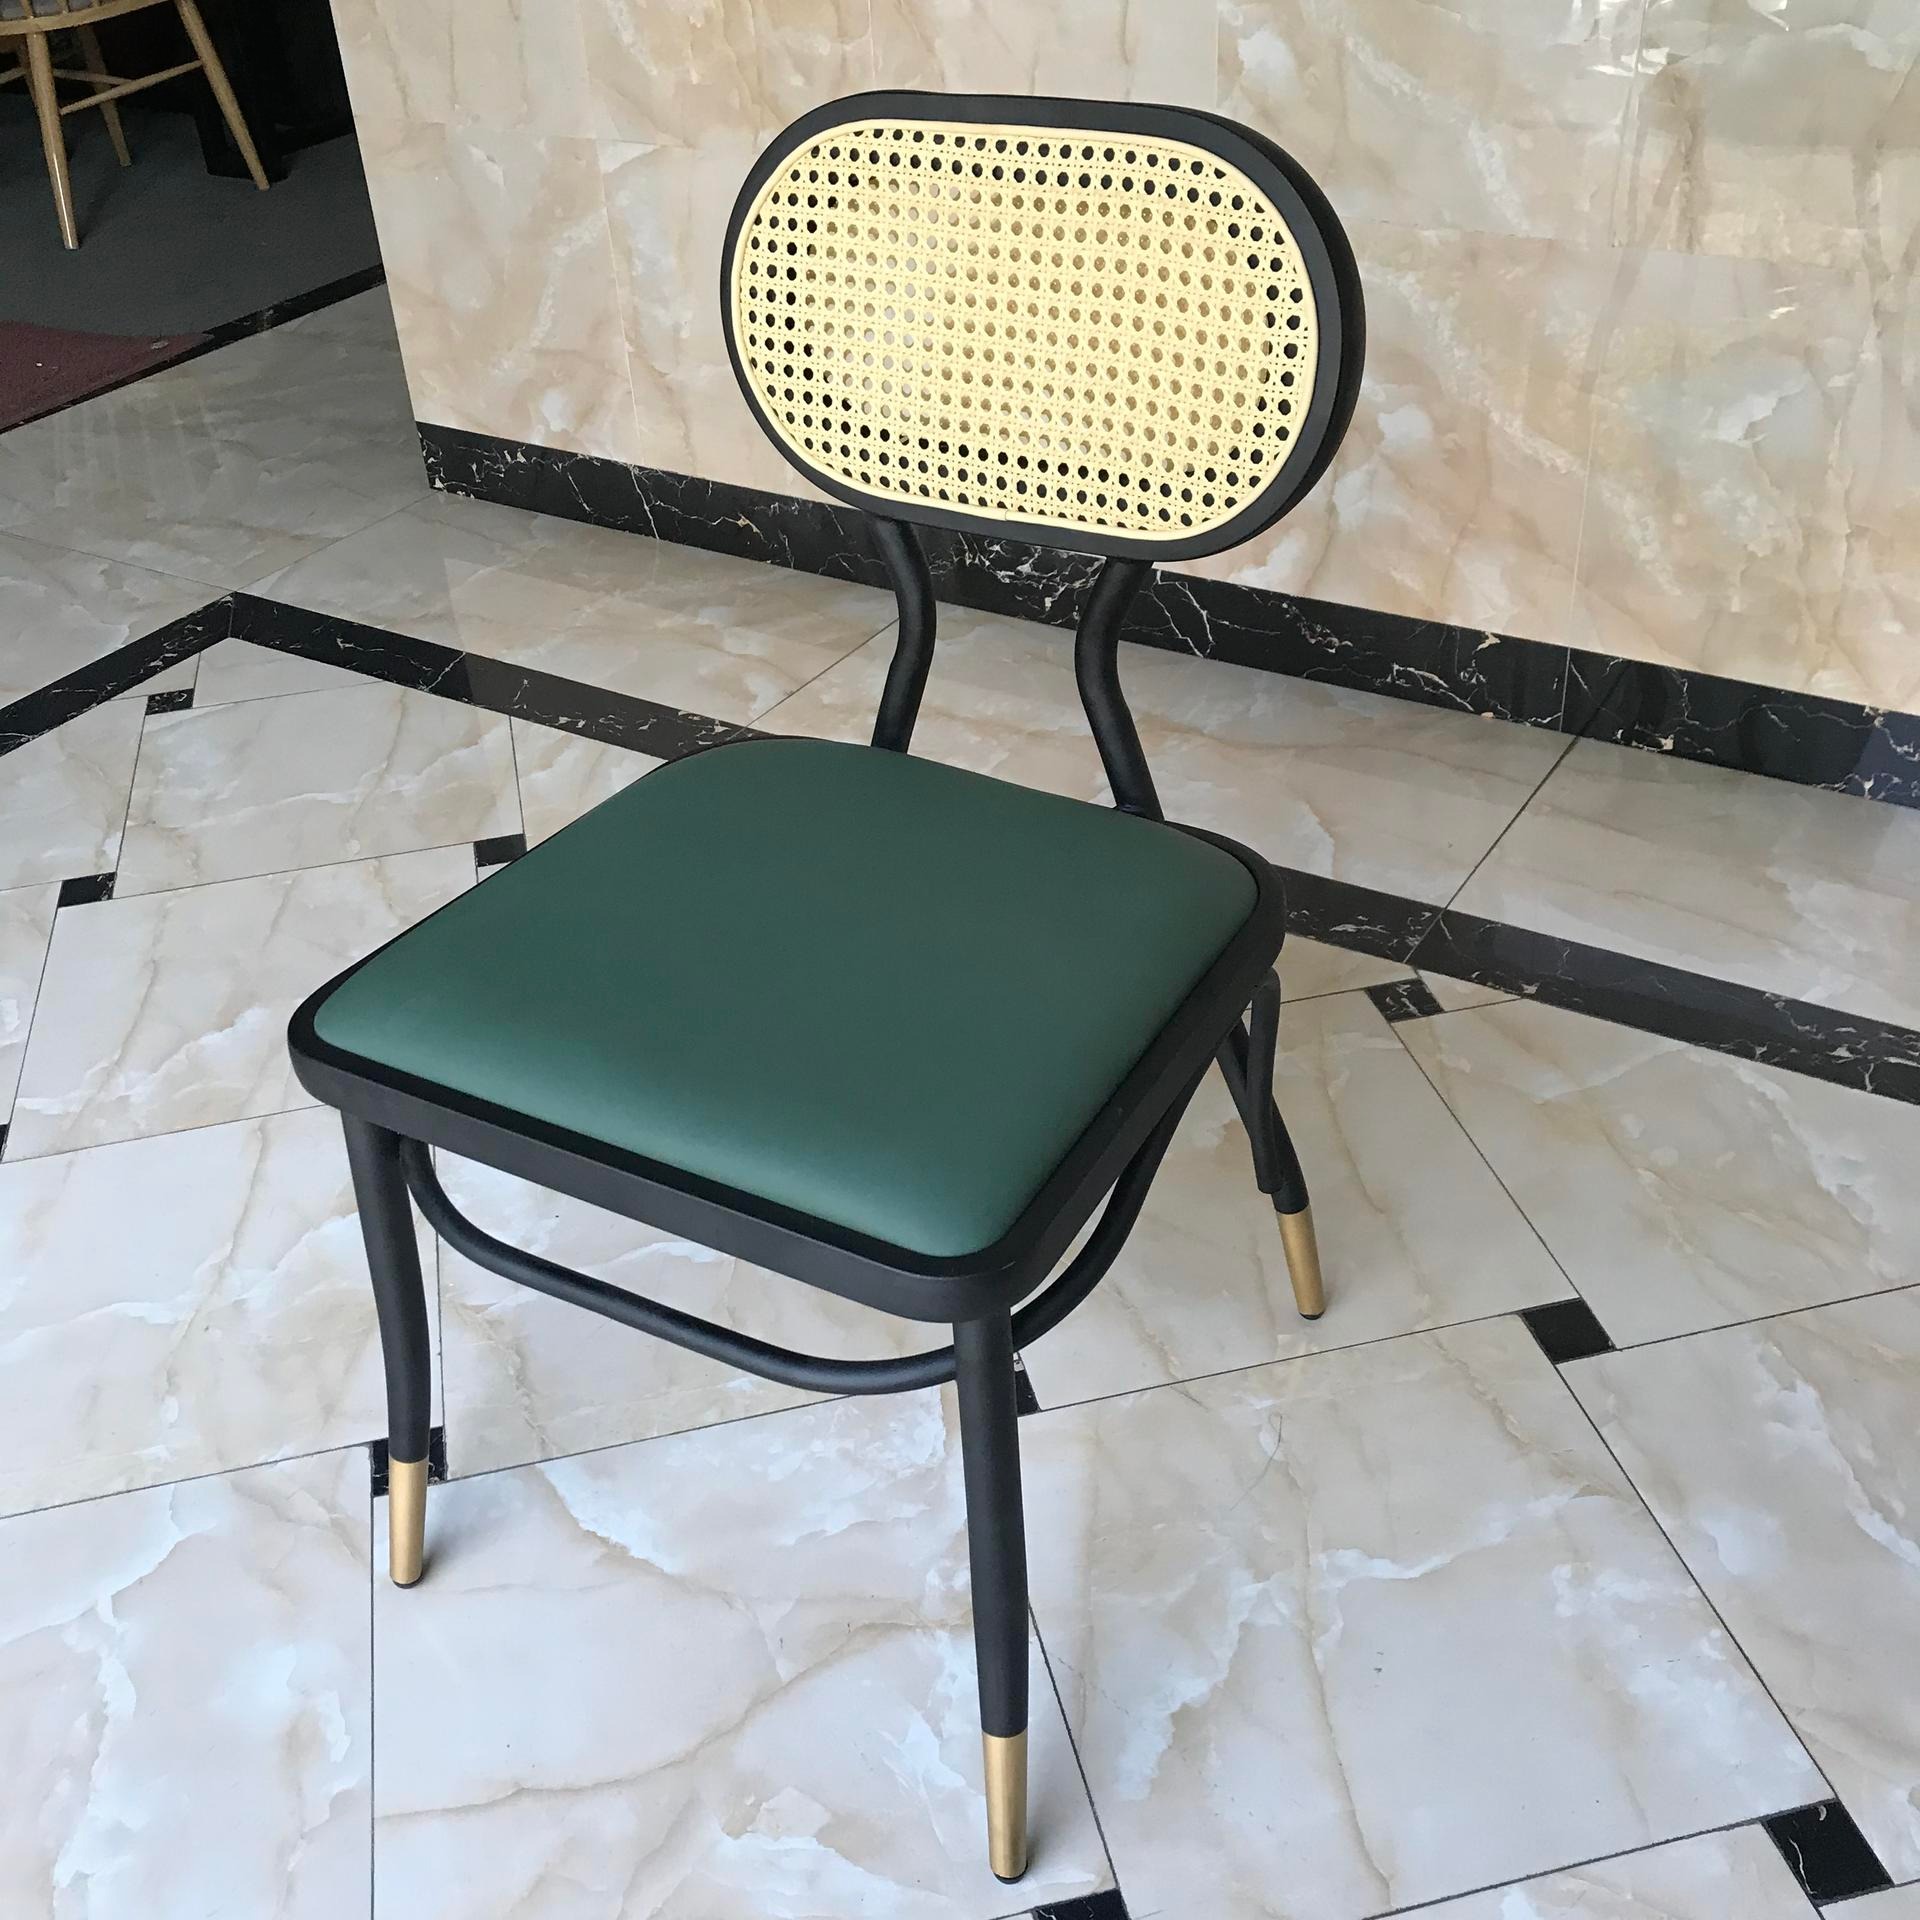 东莞迪佳2020新款编藤背椅 实木 钢架 西皮垫 家用椅子 塑料靠背椅 北欧塑料椅 公共餐椅 PP塑胶餐椅 快餐桌塑料椅